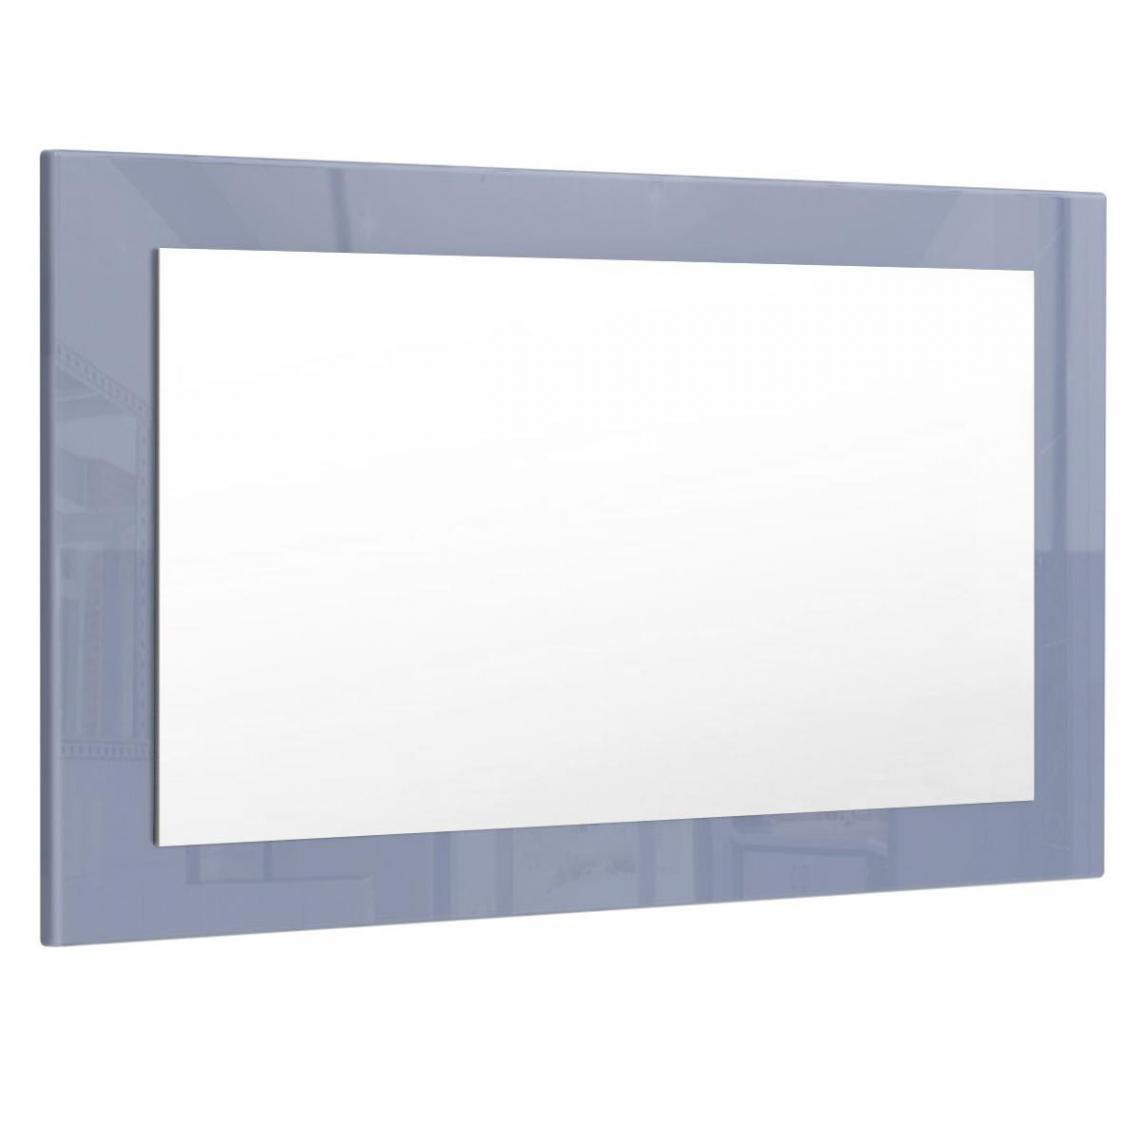 Mpc - Miroir gris brillant (HxLxP): 45 x 89 x 2 - Miroir de salle de bain